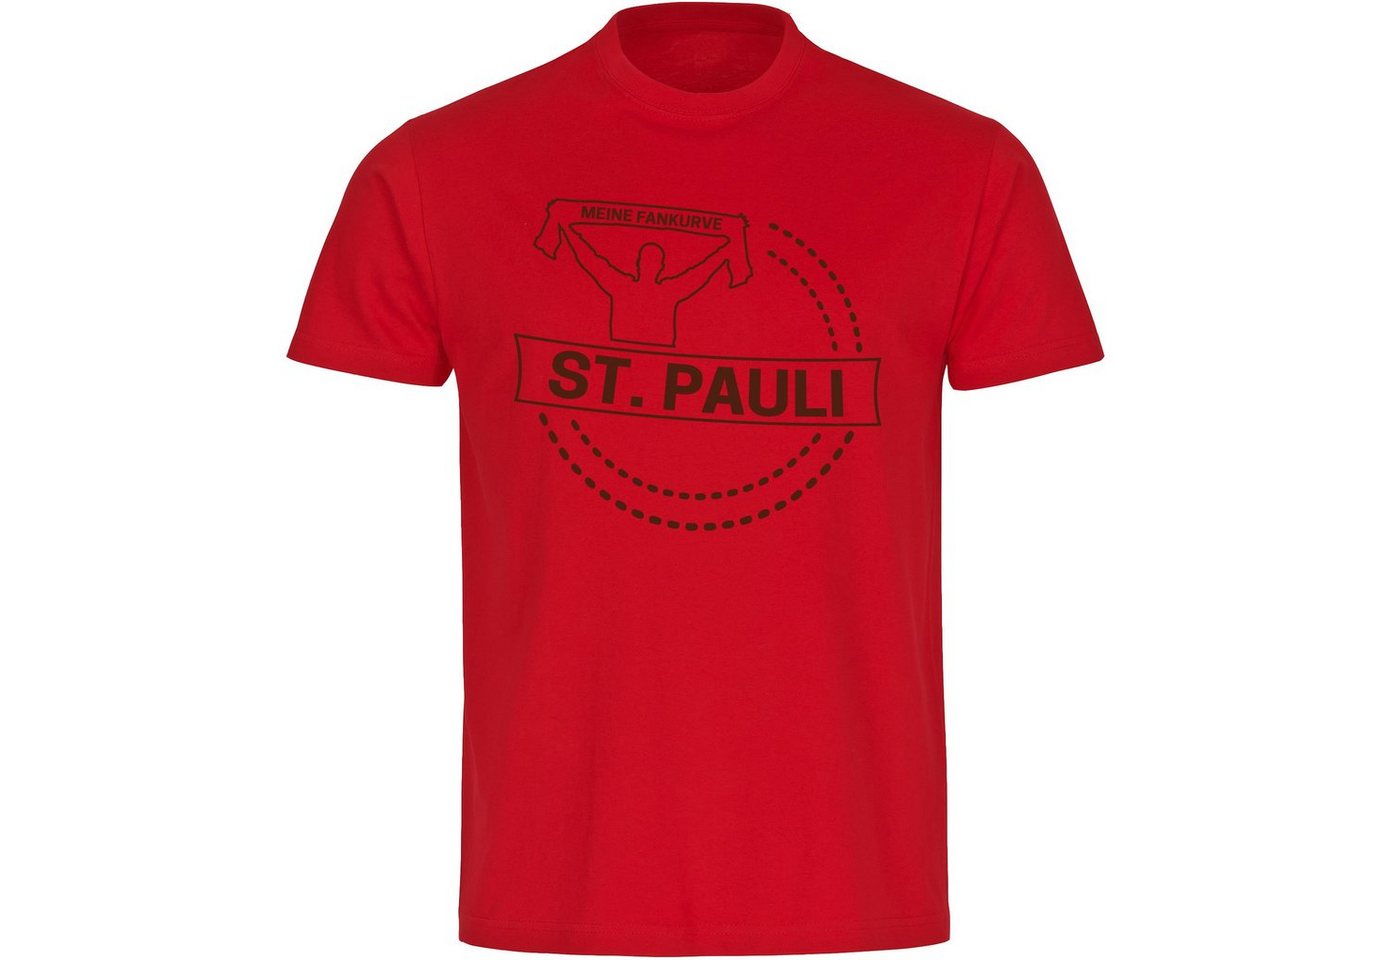 multifanshop T-Shirt Herren St. Pauli - Meine Fankurve - Männer von multifanshop